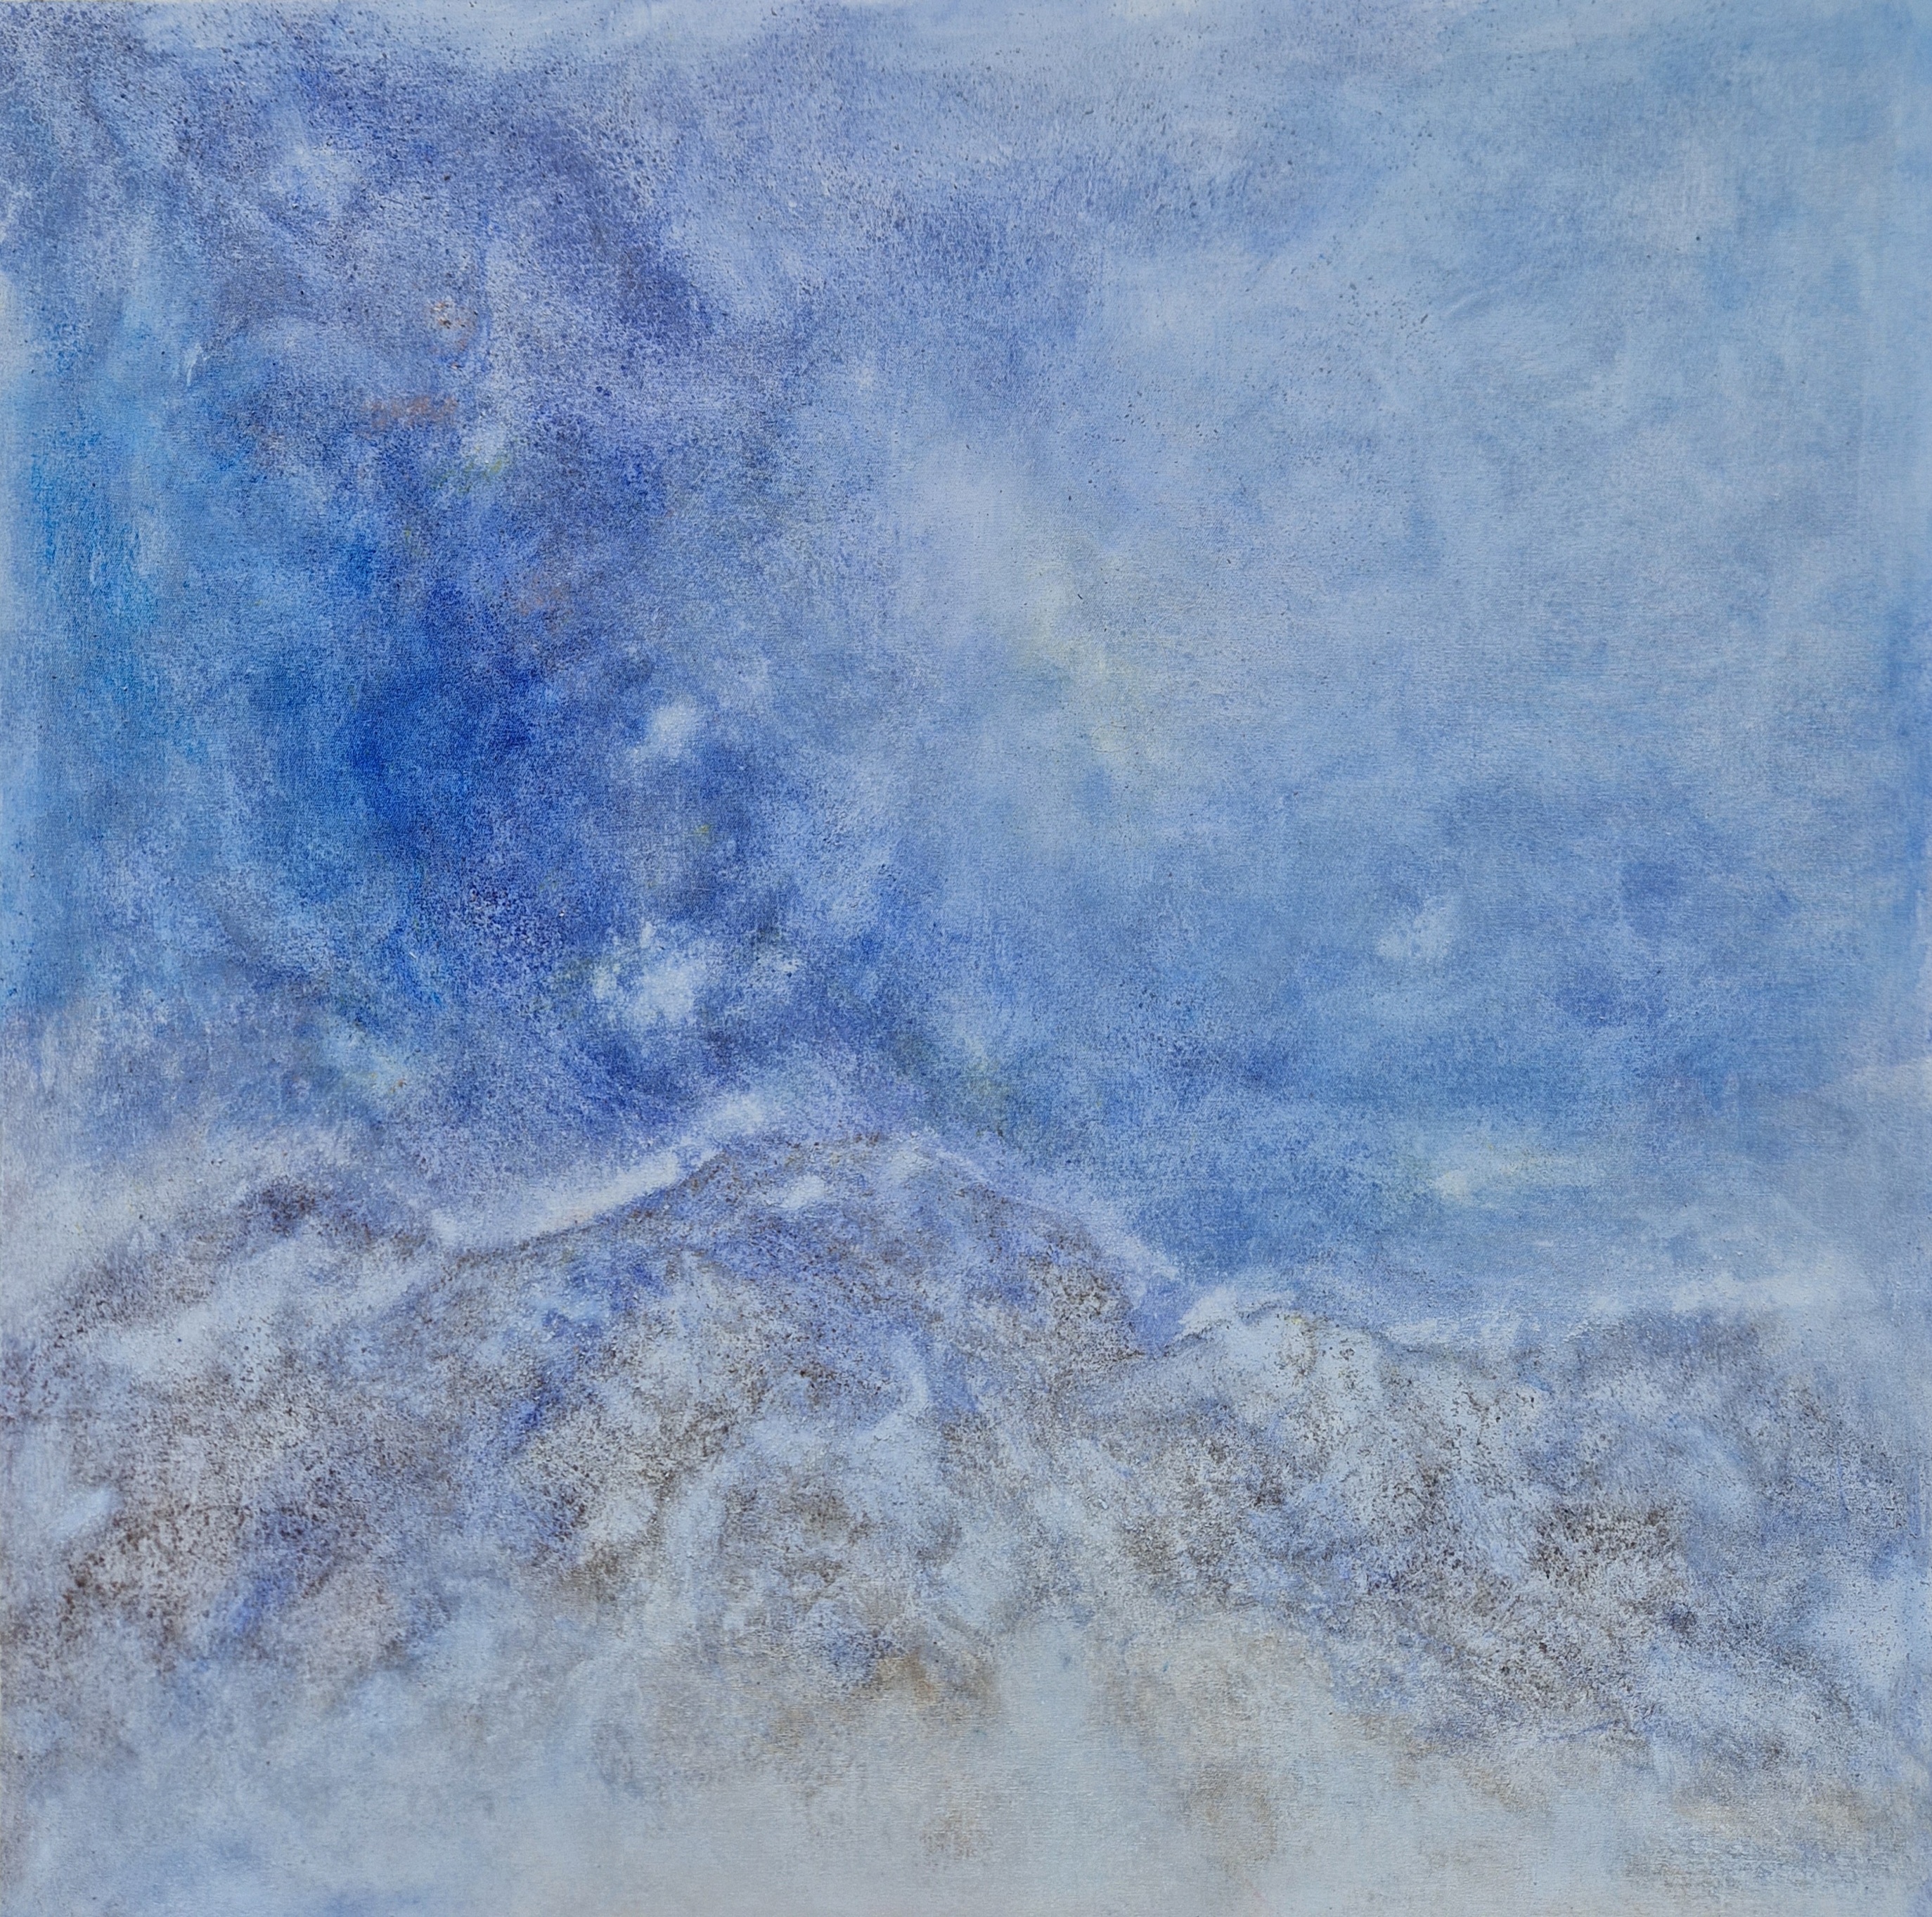 Privatbesitz,70x70 cm, mineralisches Pigment mit Ultramarinblau auf Leinwand Privatsatz